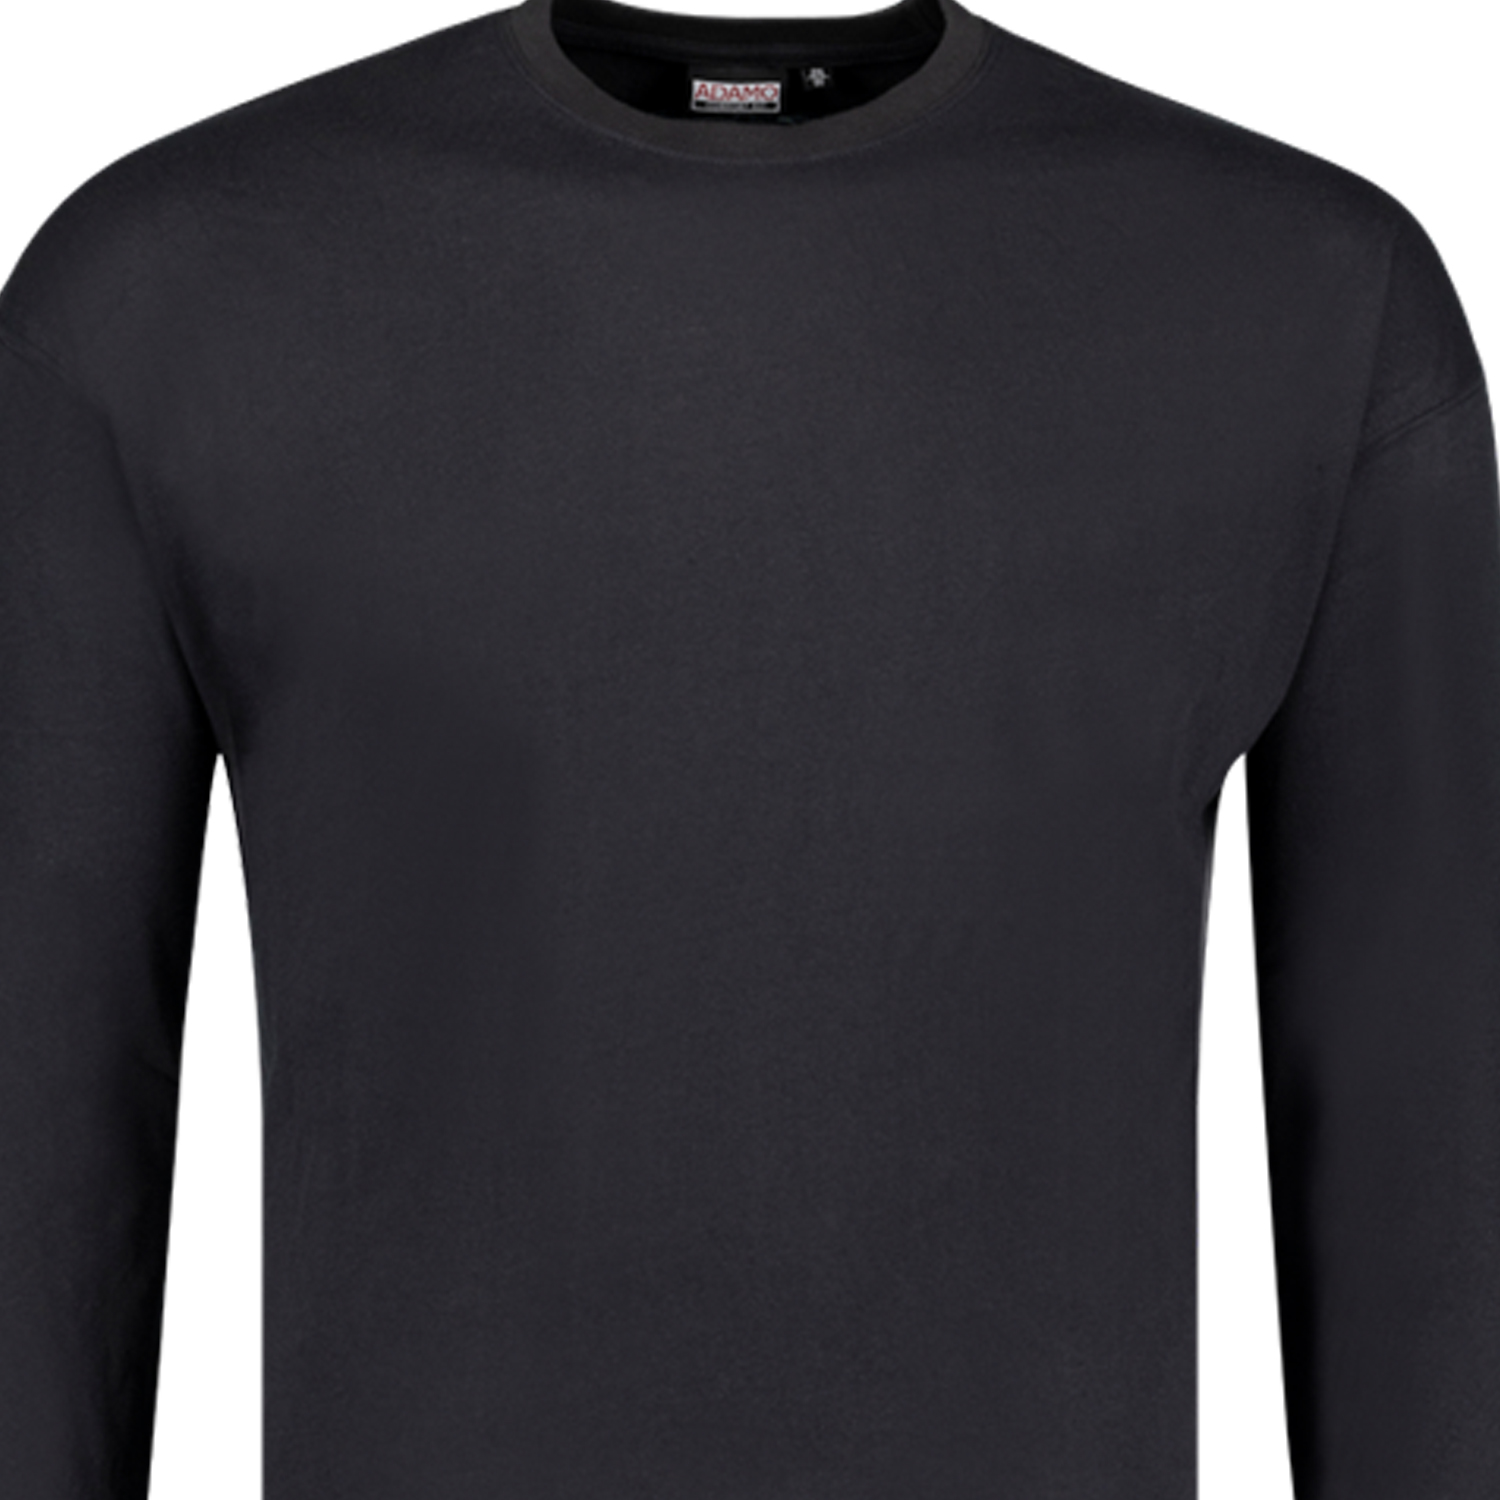 Langarmshirt für Herren COMFORT FIT von ADAMO in schwarz mit Rundhalsausschnitt bis Übergröße 12XL